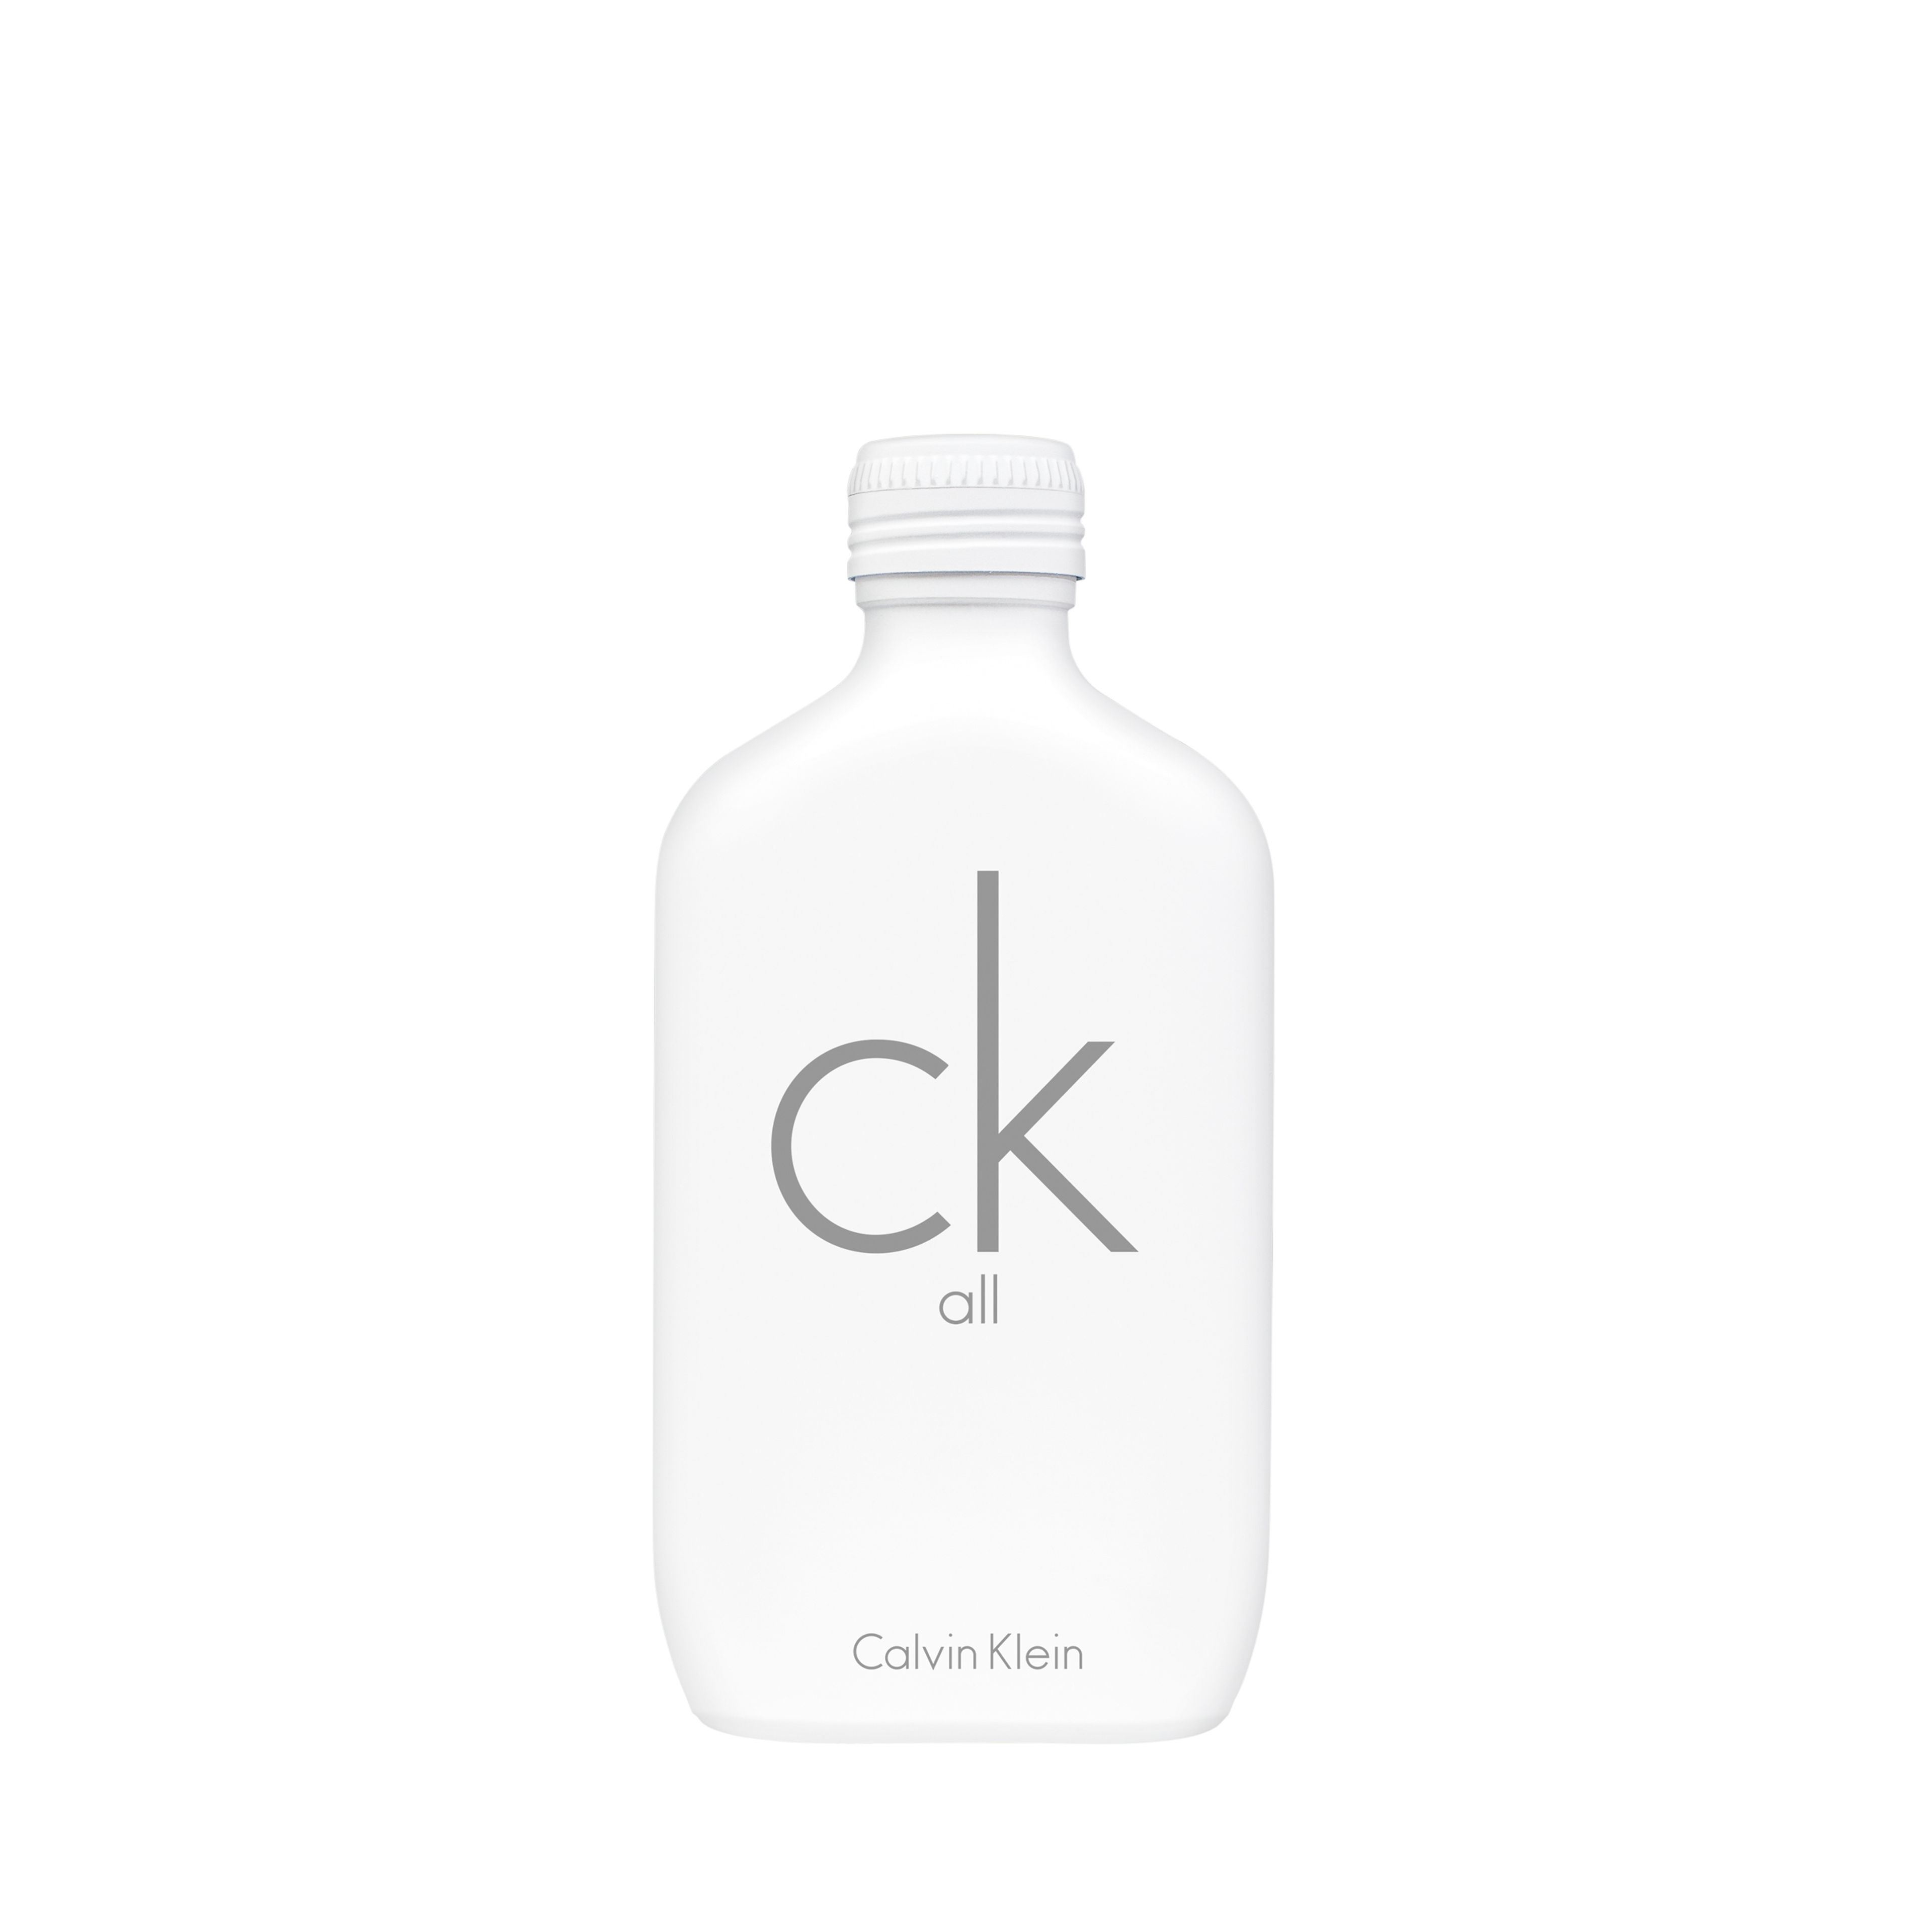 Calvin Klein Ck All Eau De Toilette 1